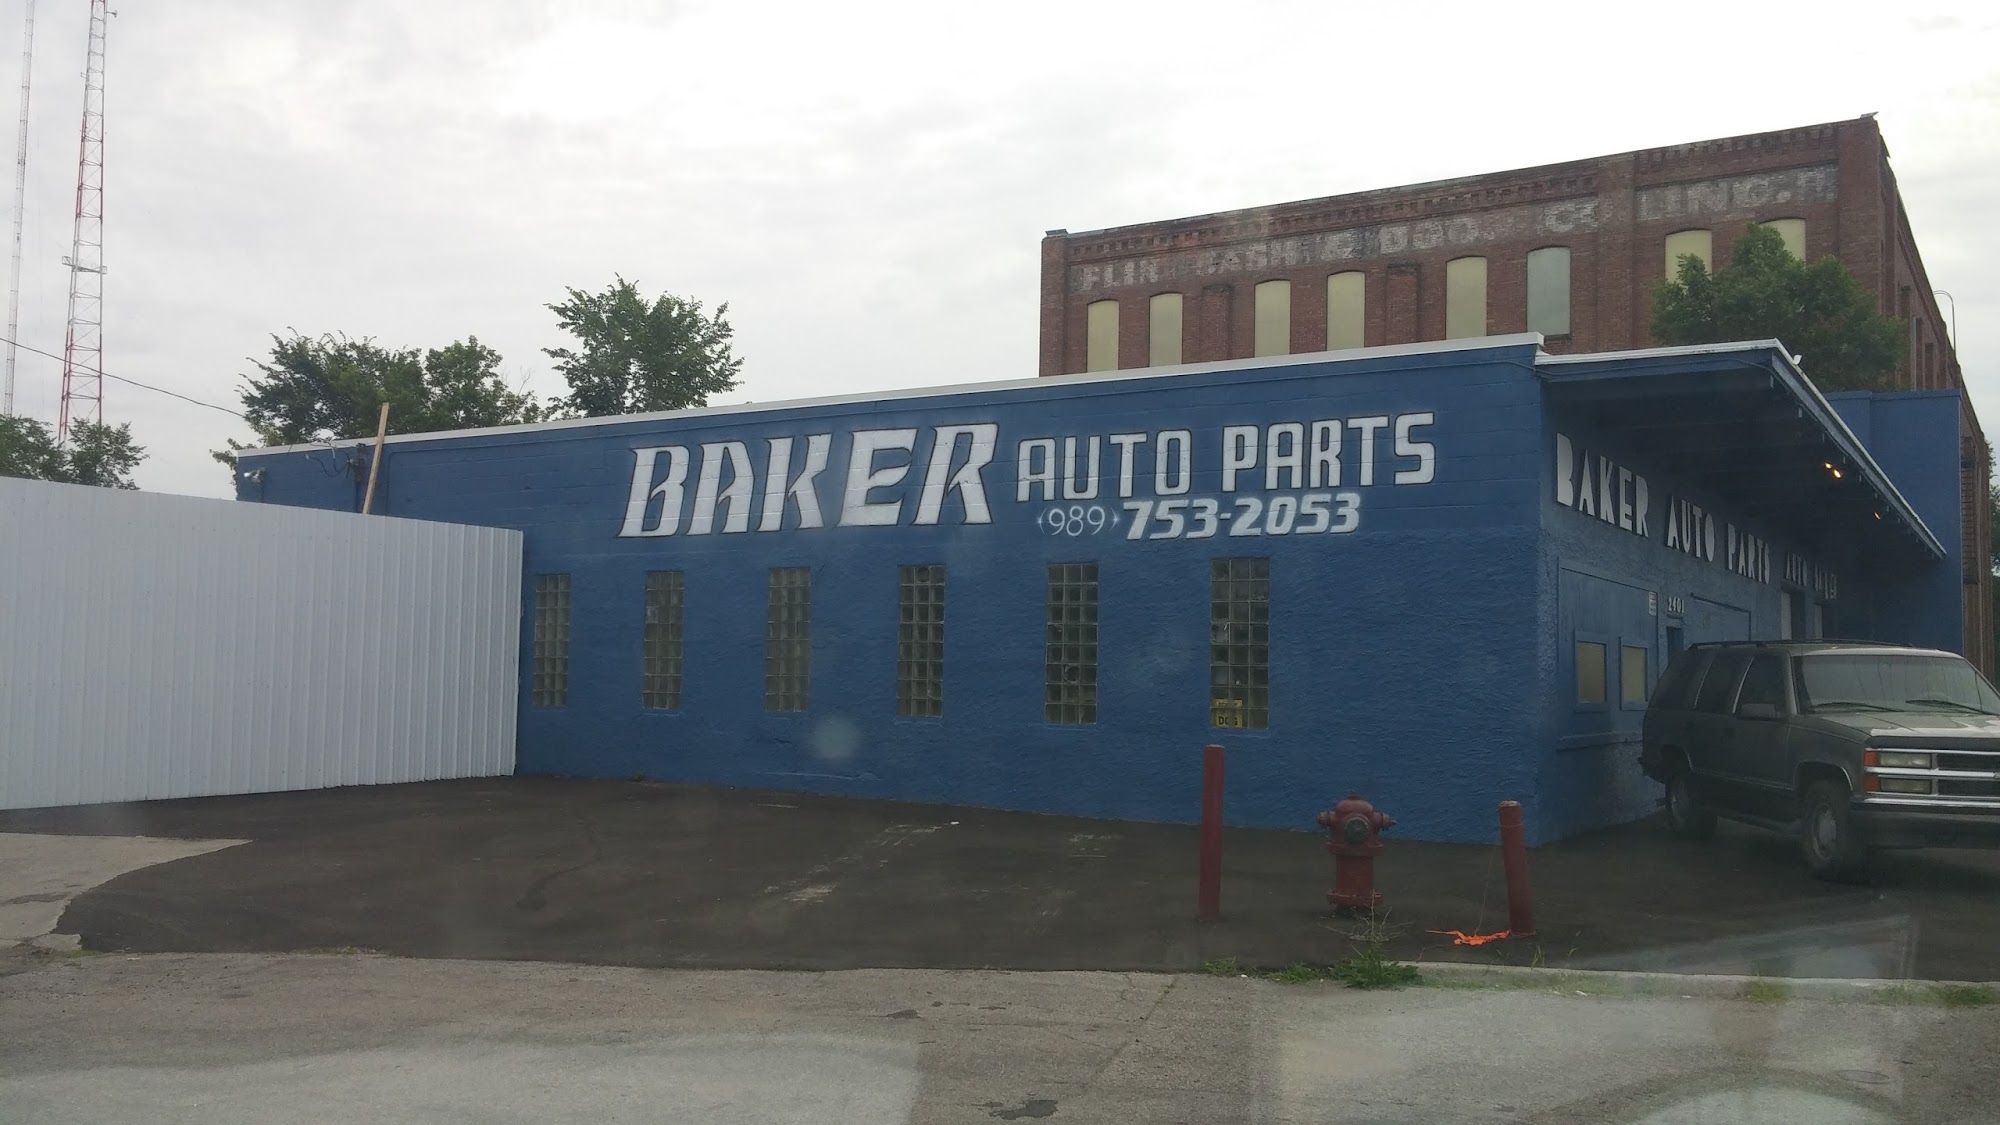 Baker Auto Parts